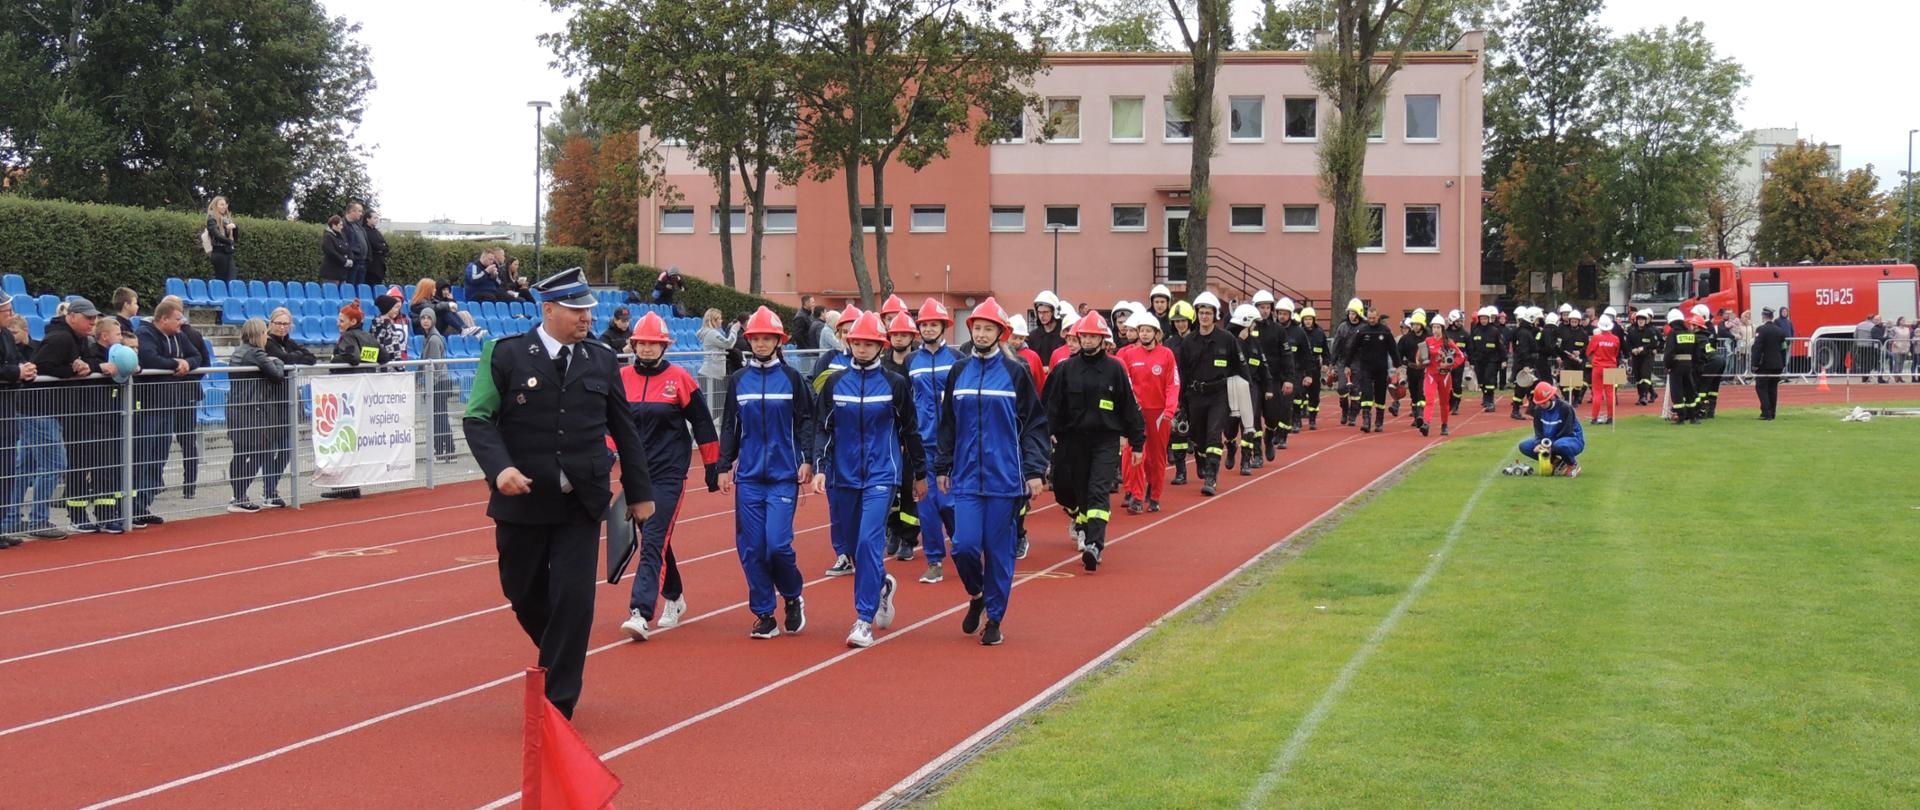 Na zdjęciu widać drużyny wchodzące na stadion.